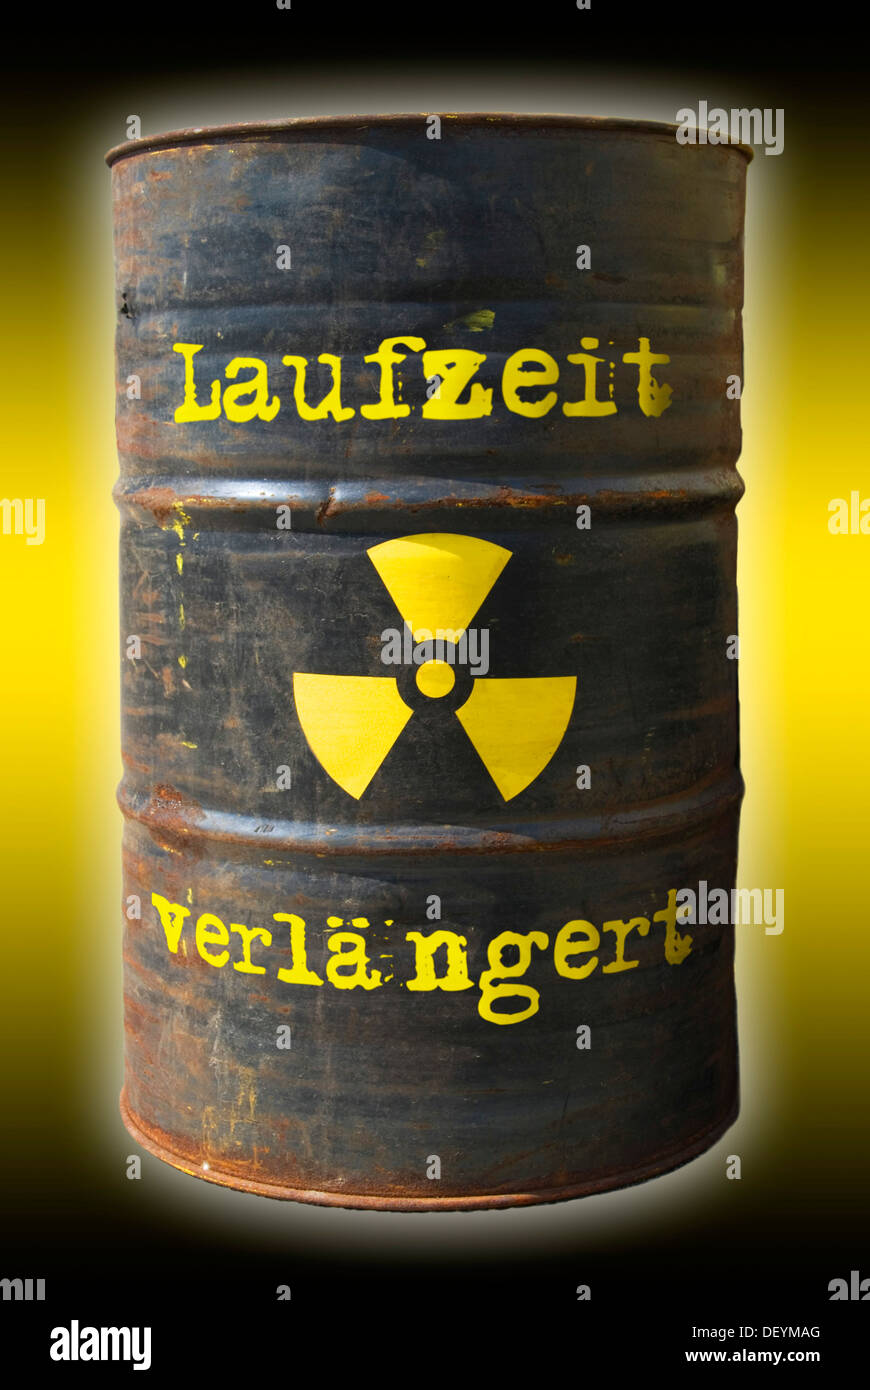 Barile arrugginito con una radiazione il simbolo di avvertimento e lettering "Laufzeit verlaengert', tedesco per "extended runtime' Foto Stock